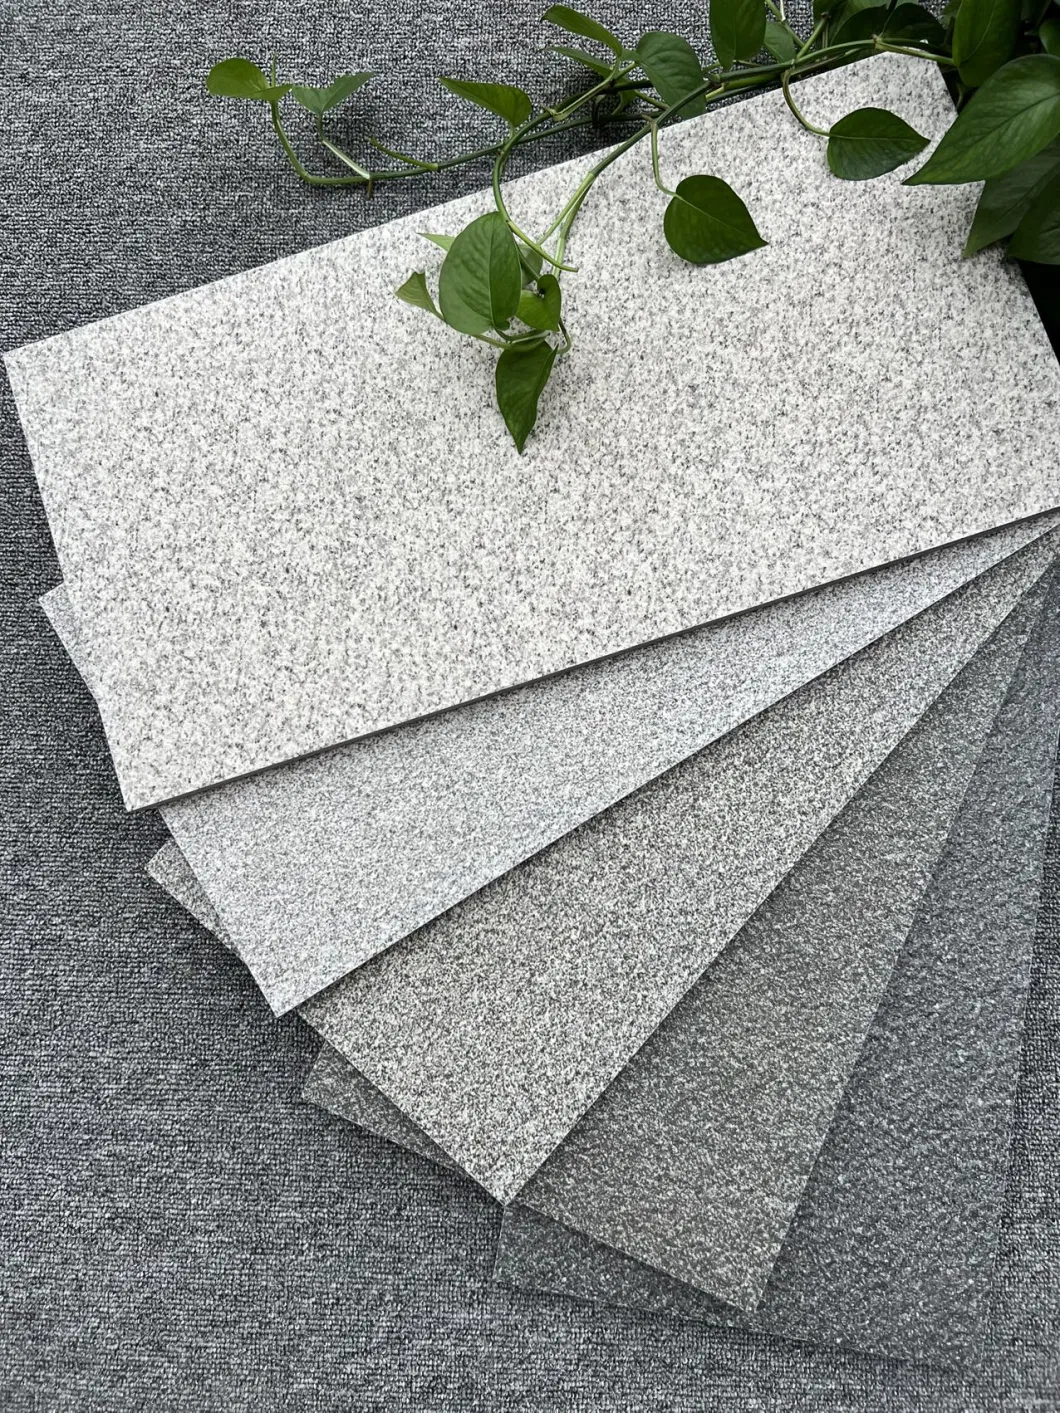 Artificial Granite Paving Stones Ceramic Tile Slabs Floor / Garden Courtyard Outdoor Block Paver Wall Floor Granite Tiles 300X600mm Ls366